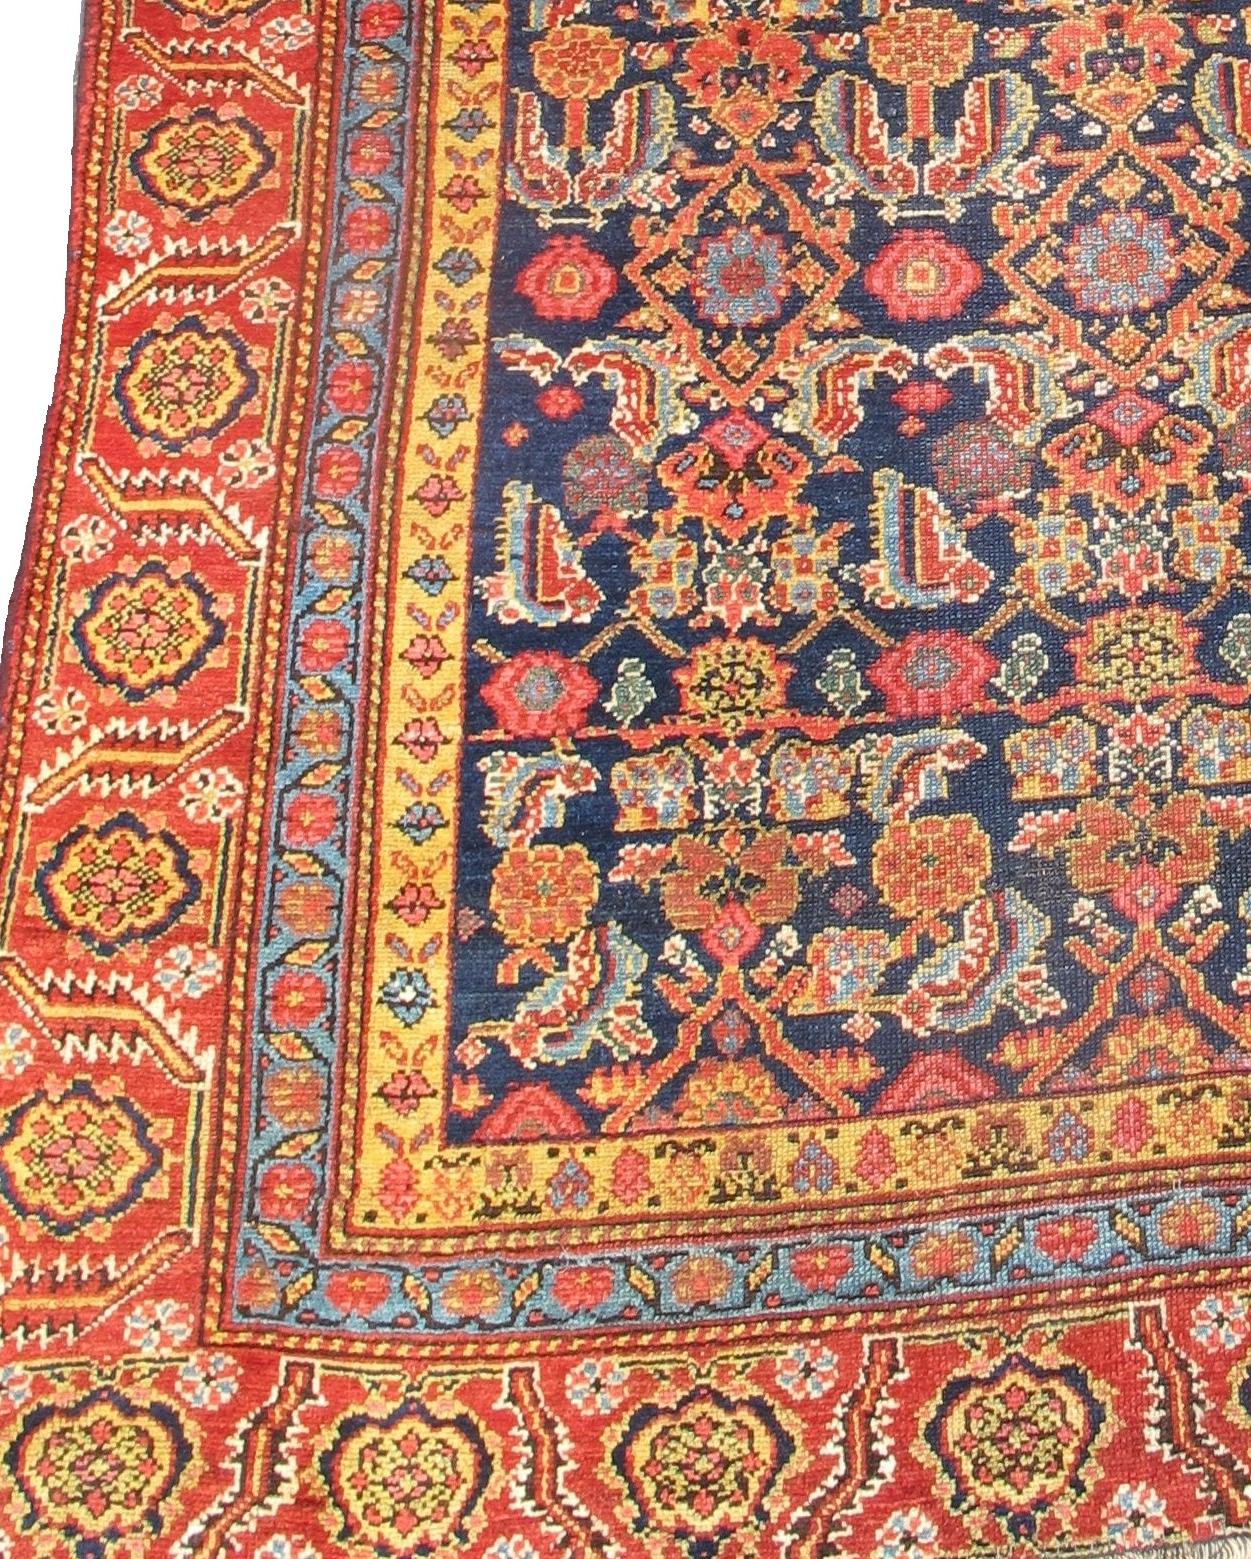 Northwest Persian gallery rug. Measures: 4'0